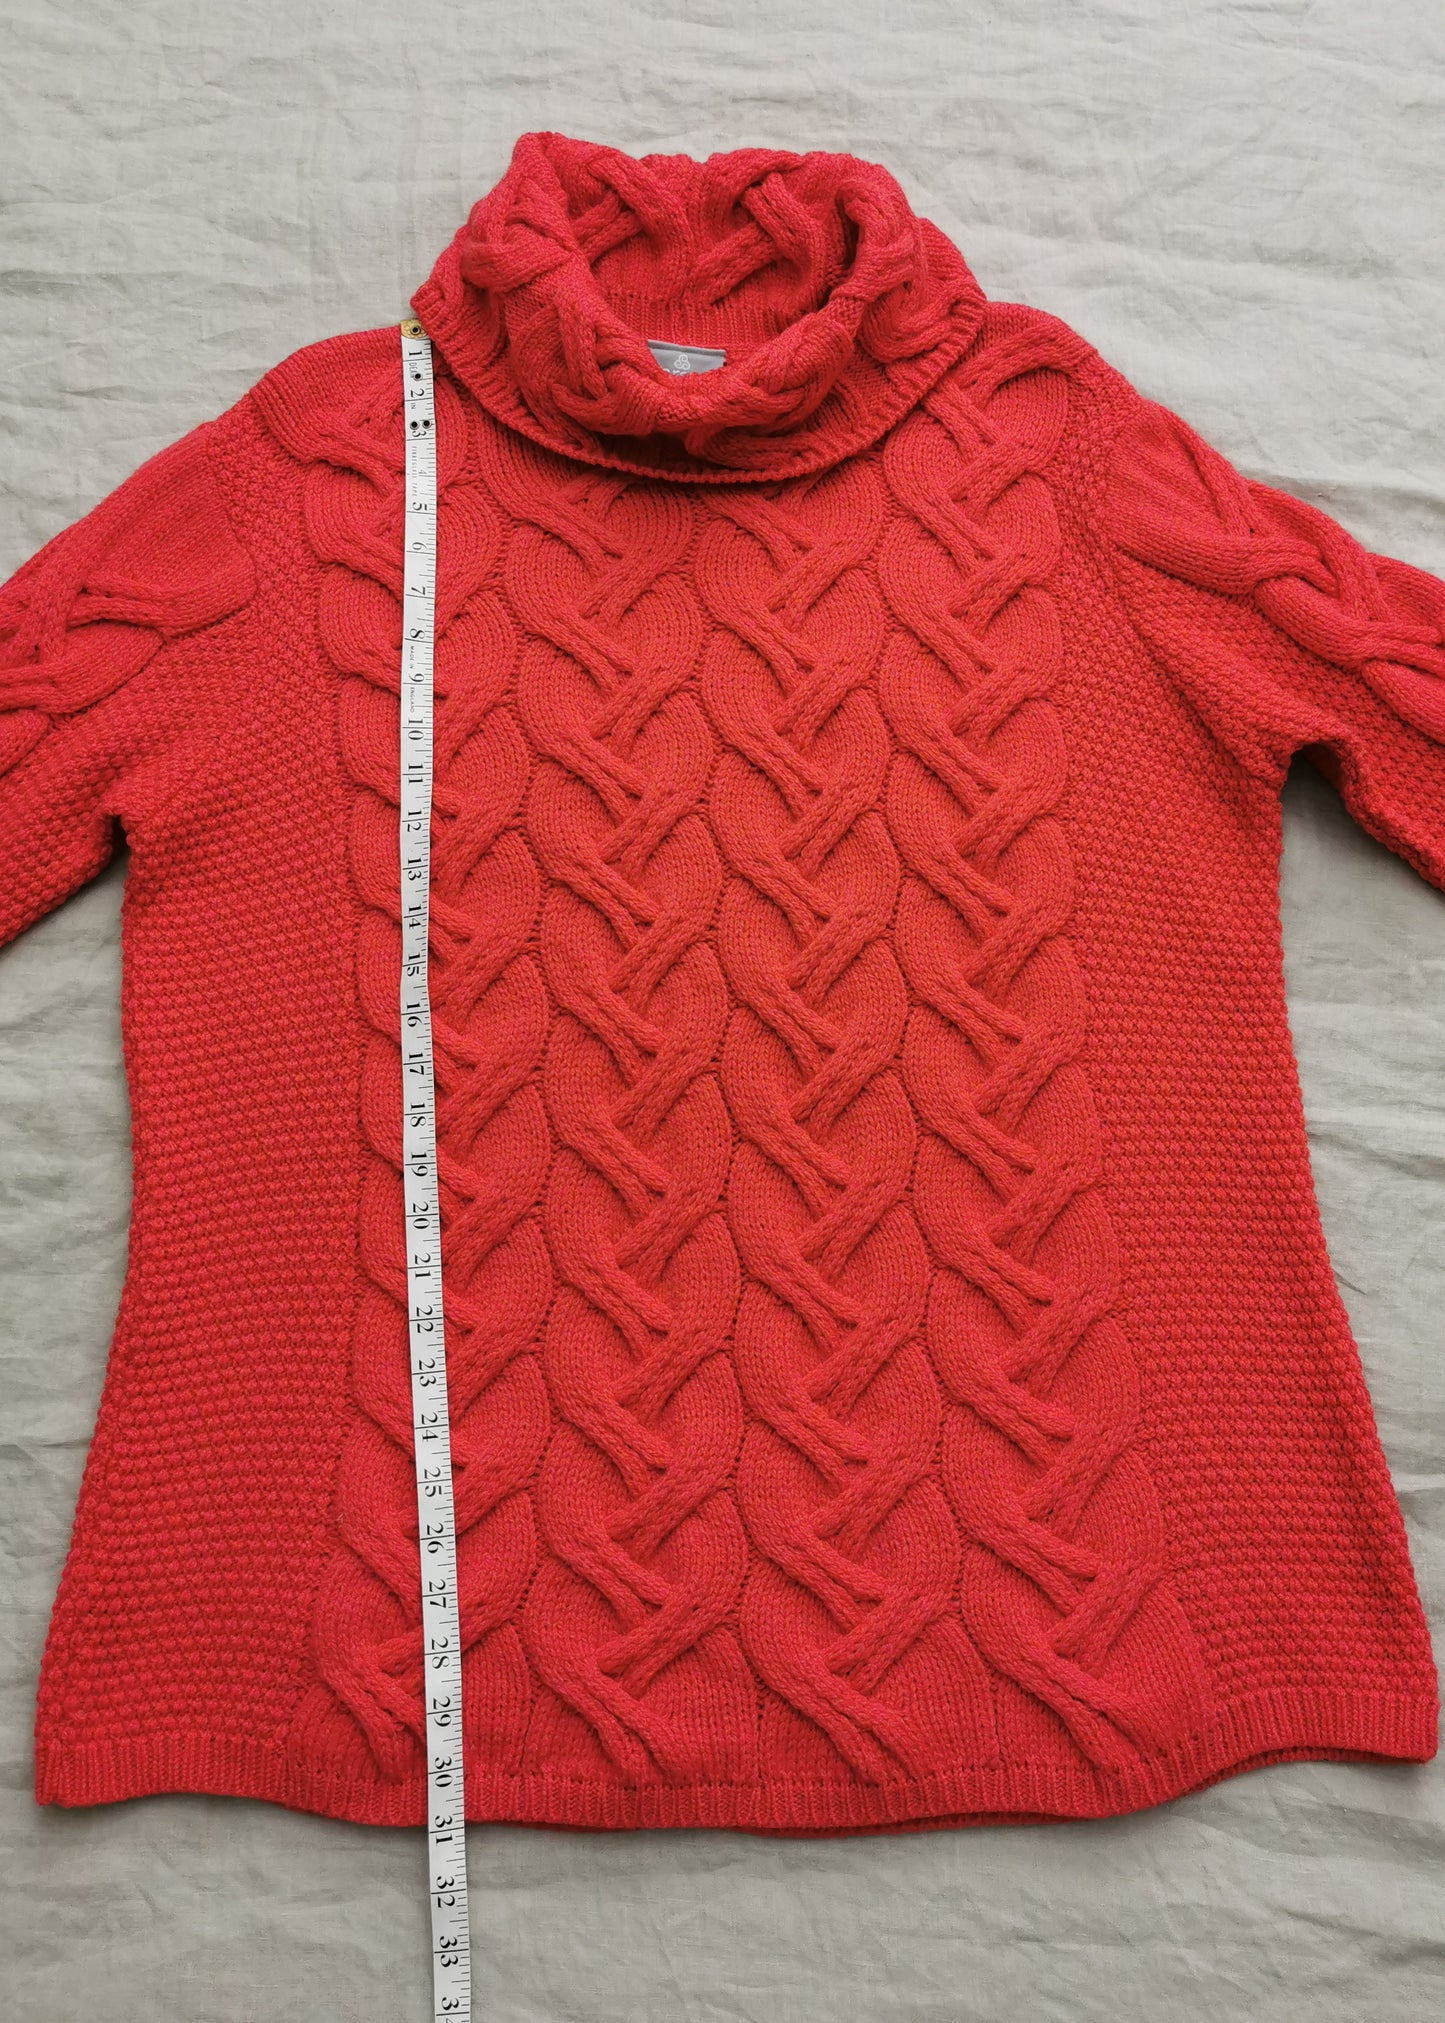 Aran Woolen Mills Kinsale Merino Wool Cable Knit Sweater (XXL)